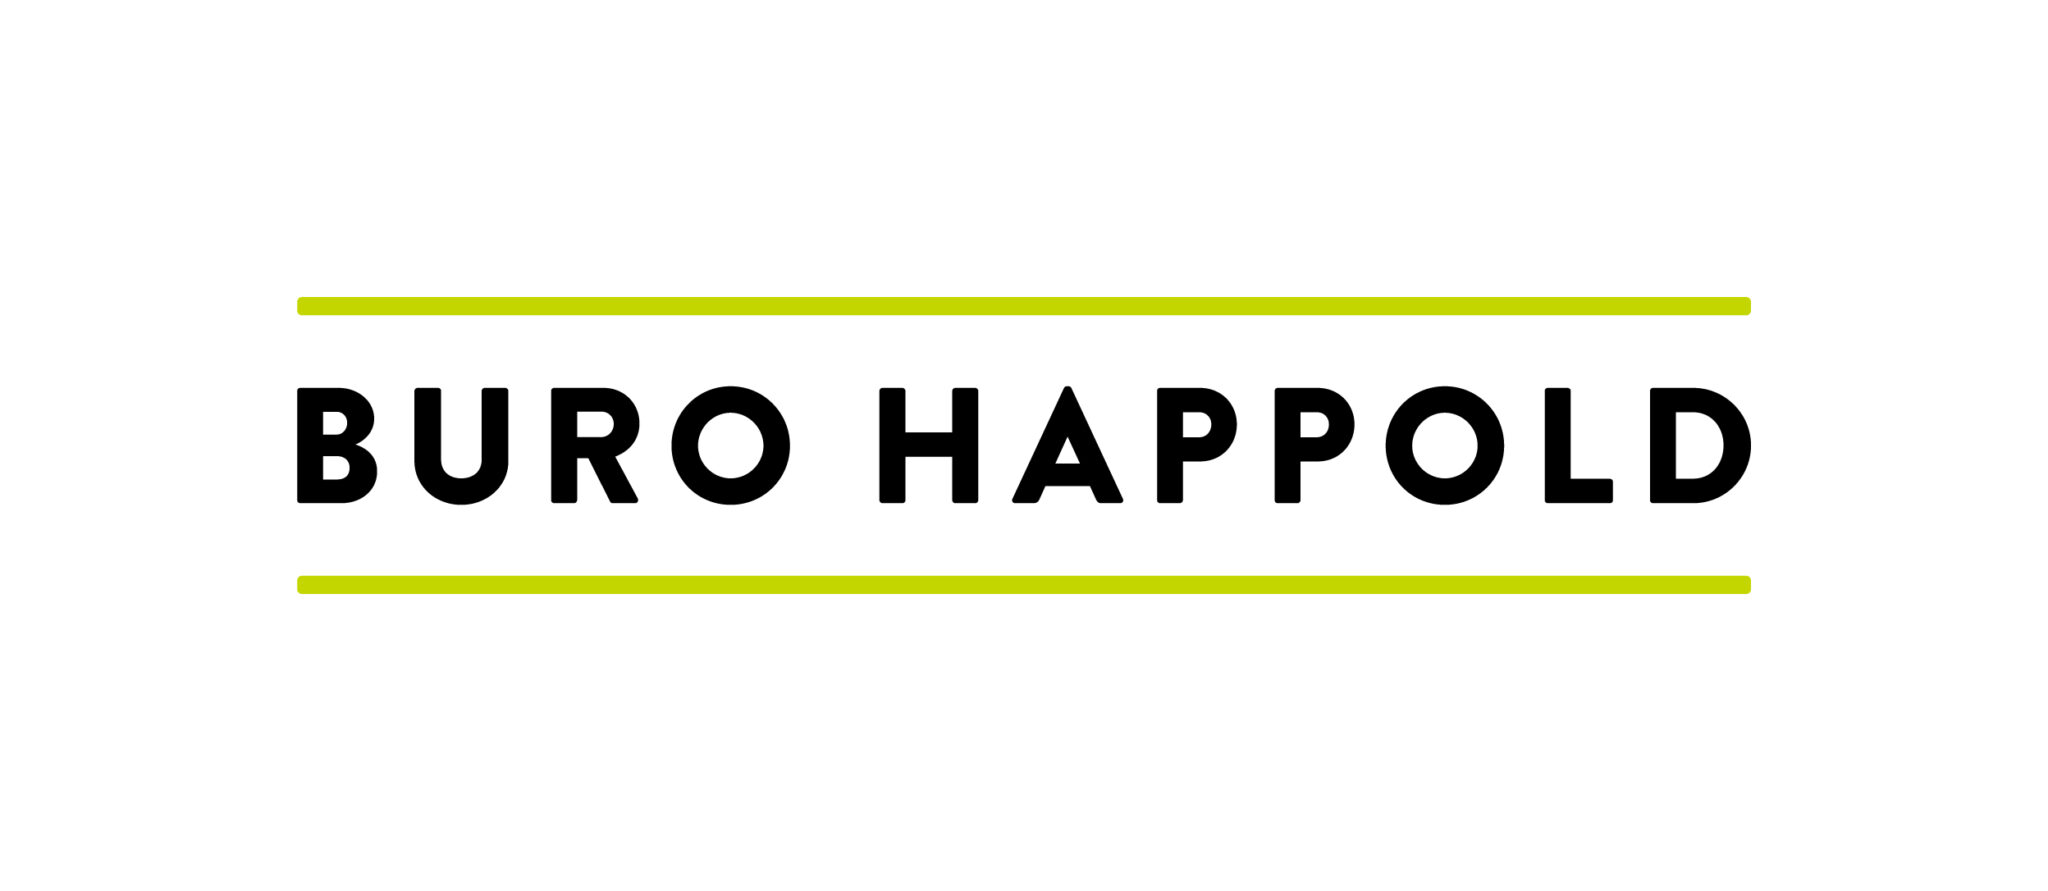 Buro Happold Advisory Group